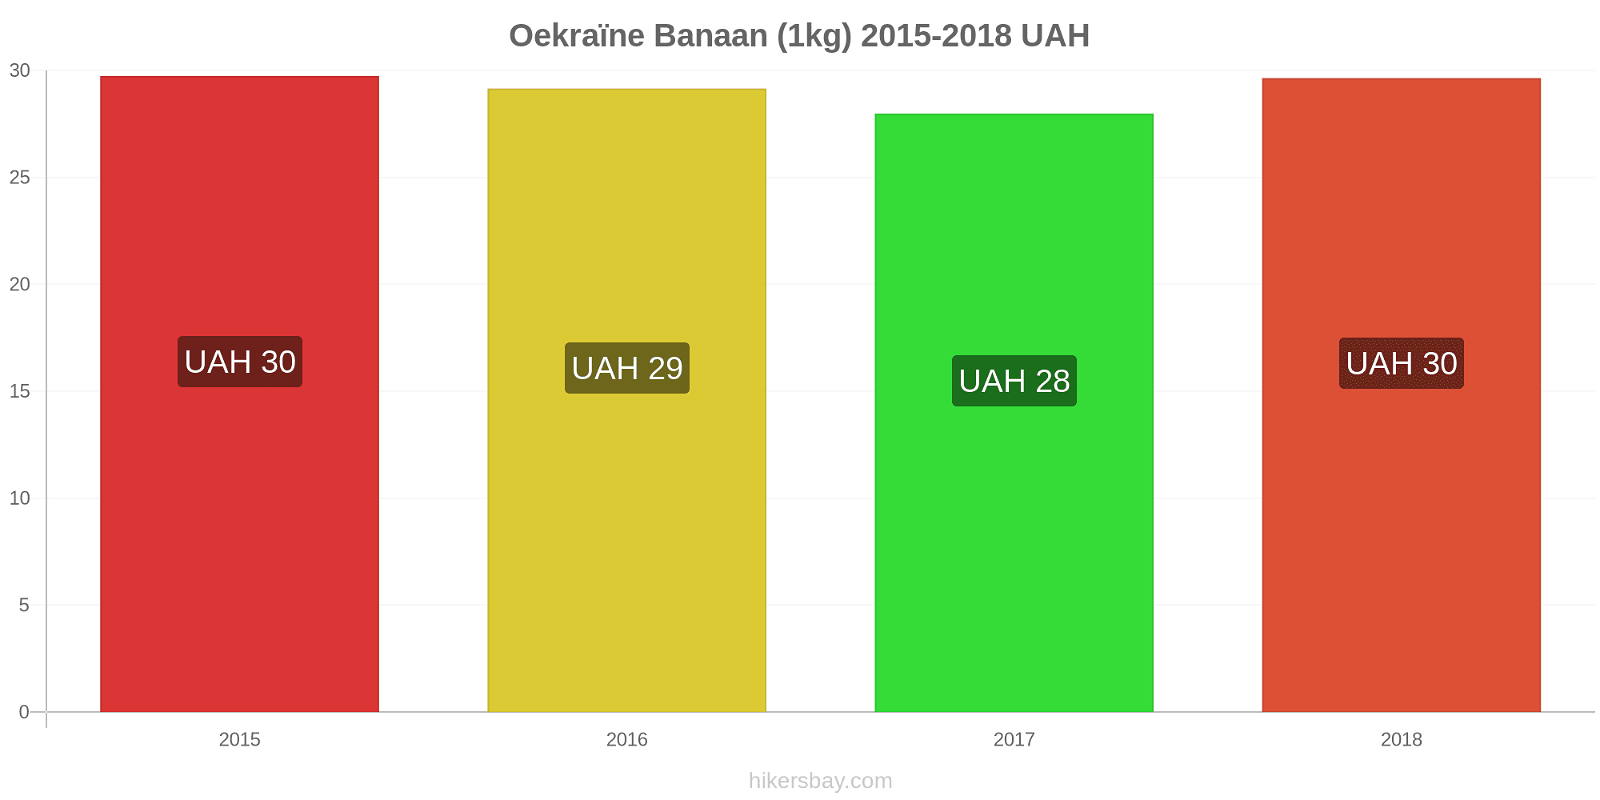 Oekraïne prijswijzigingen Bananen (1kg) hikersbay.com